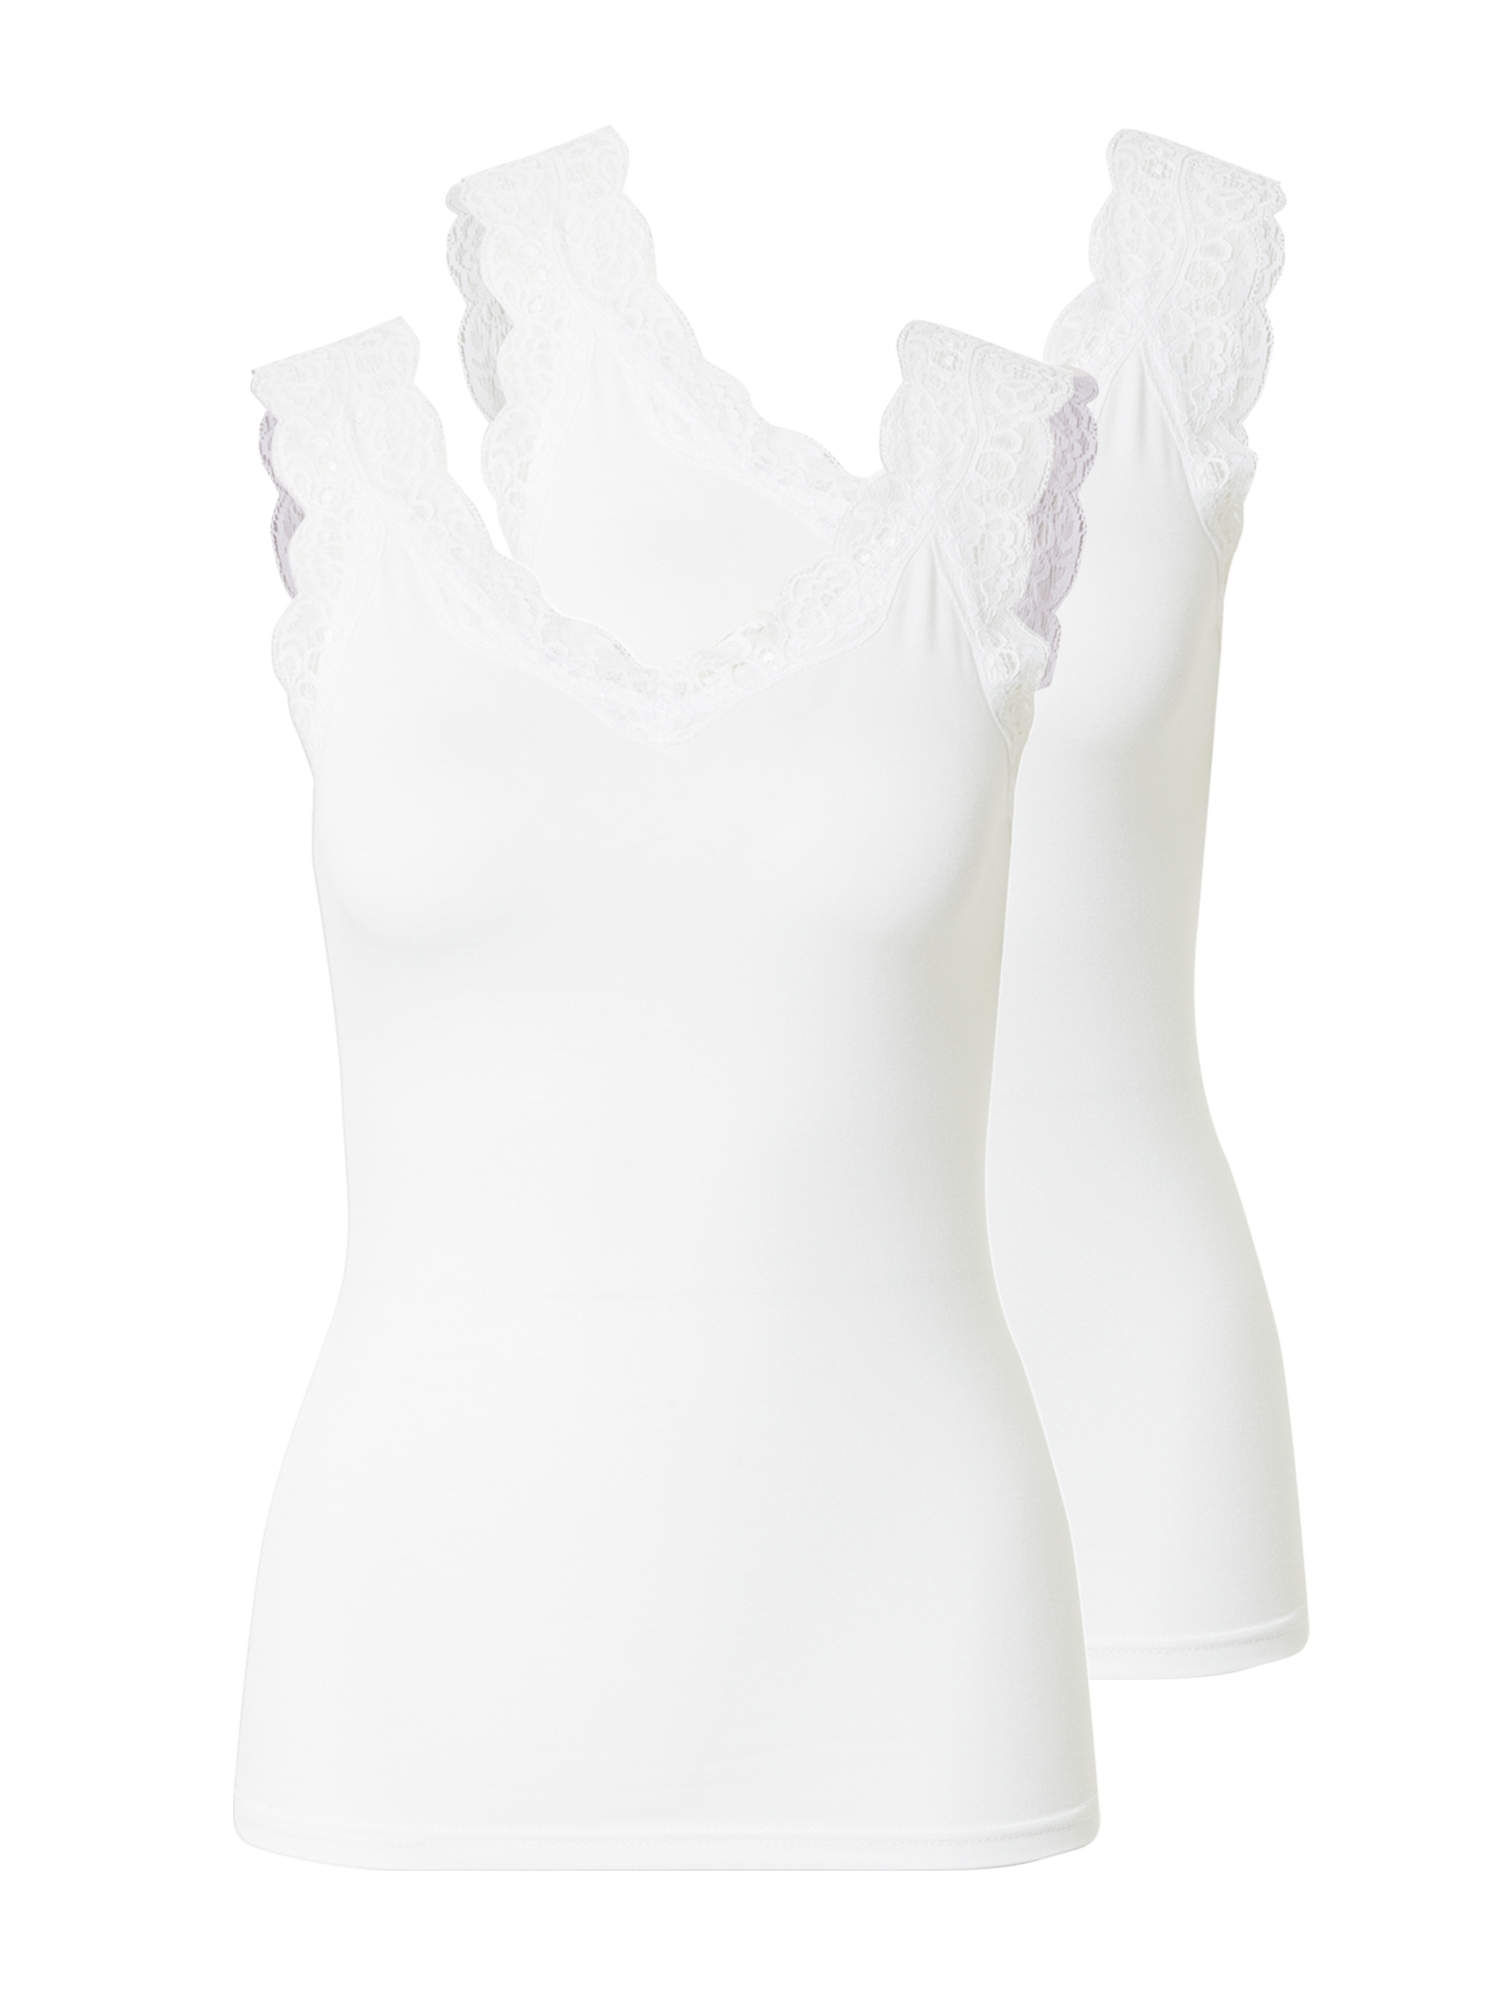 Odzież Koszulki & topy PIECES Top PCBARBERA w kolorze Białym 